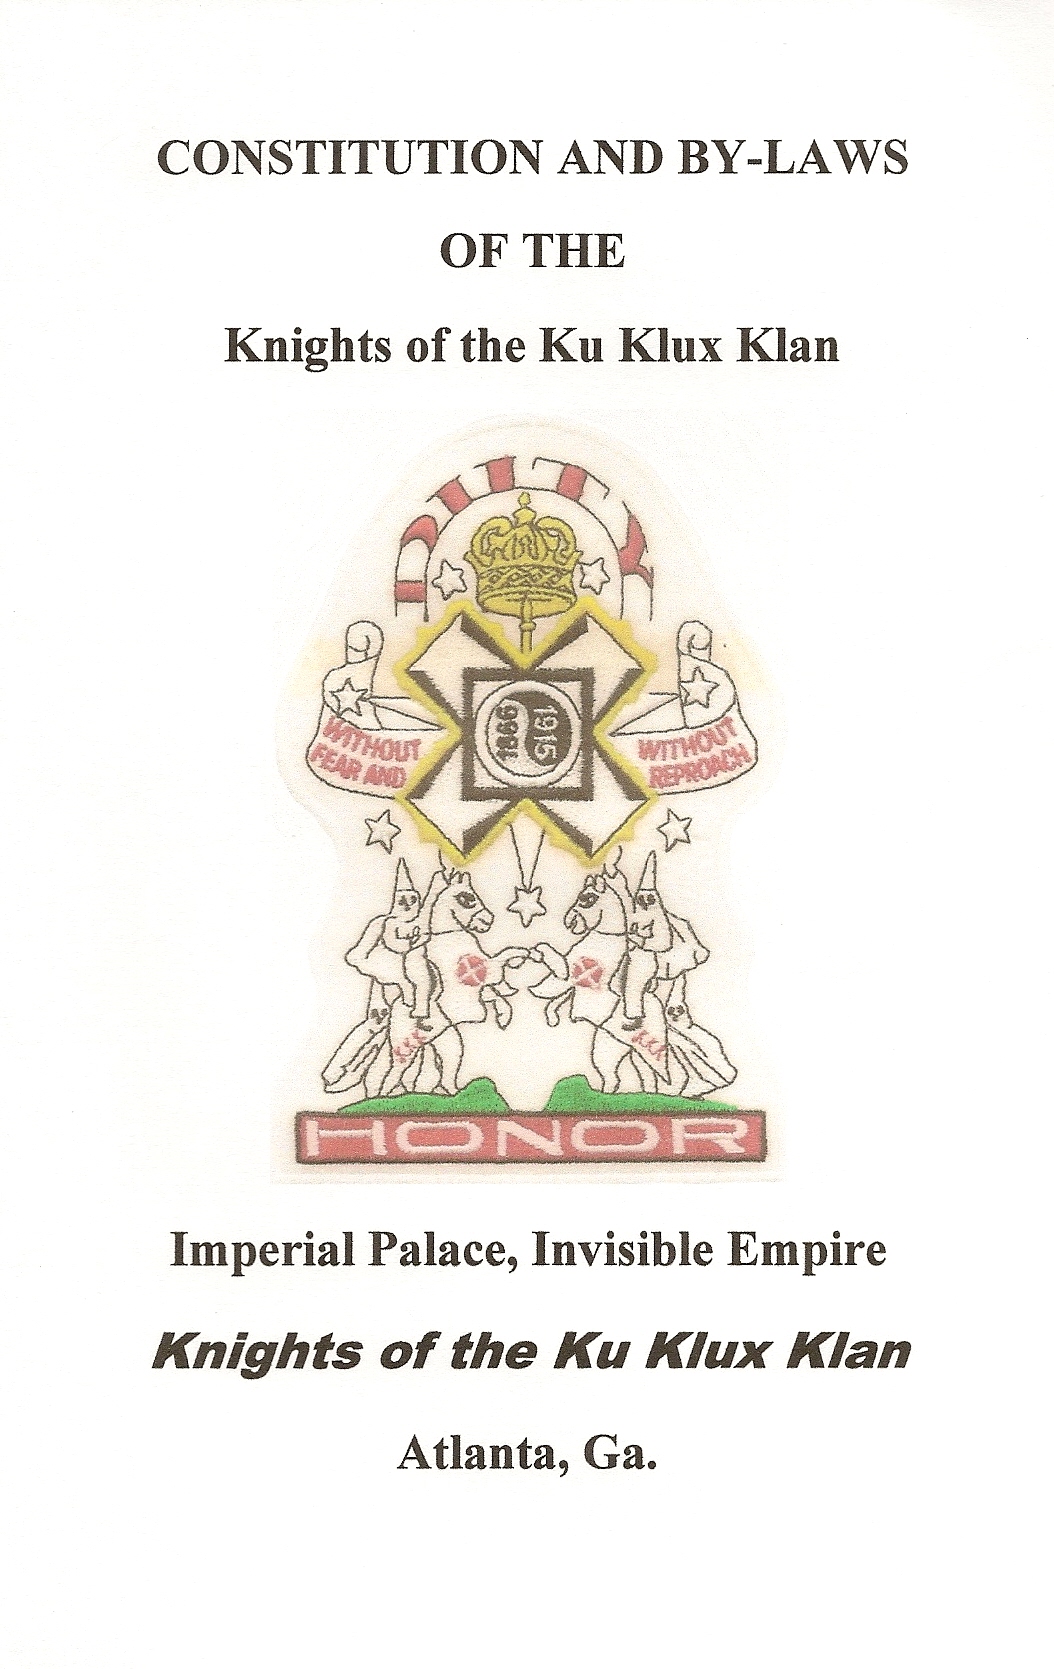 Klan items For Sale Page 4- booklets,officers,klansmen>